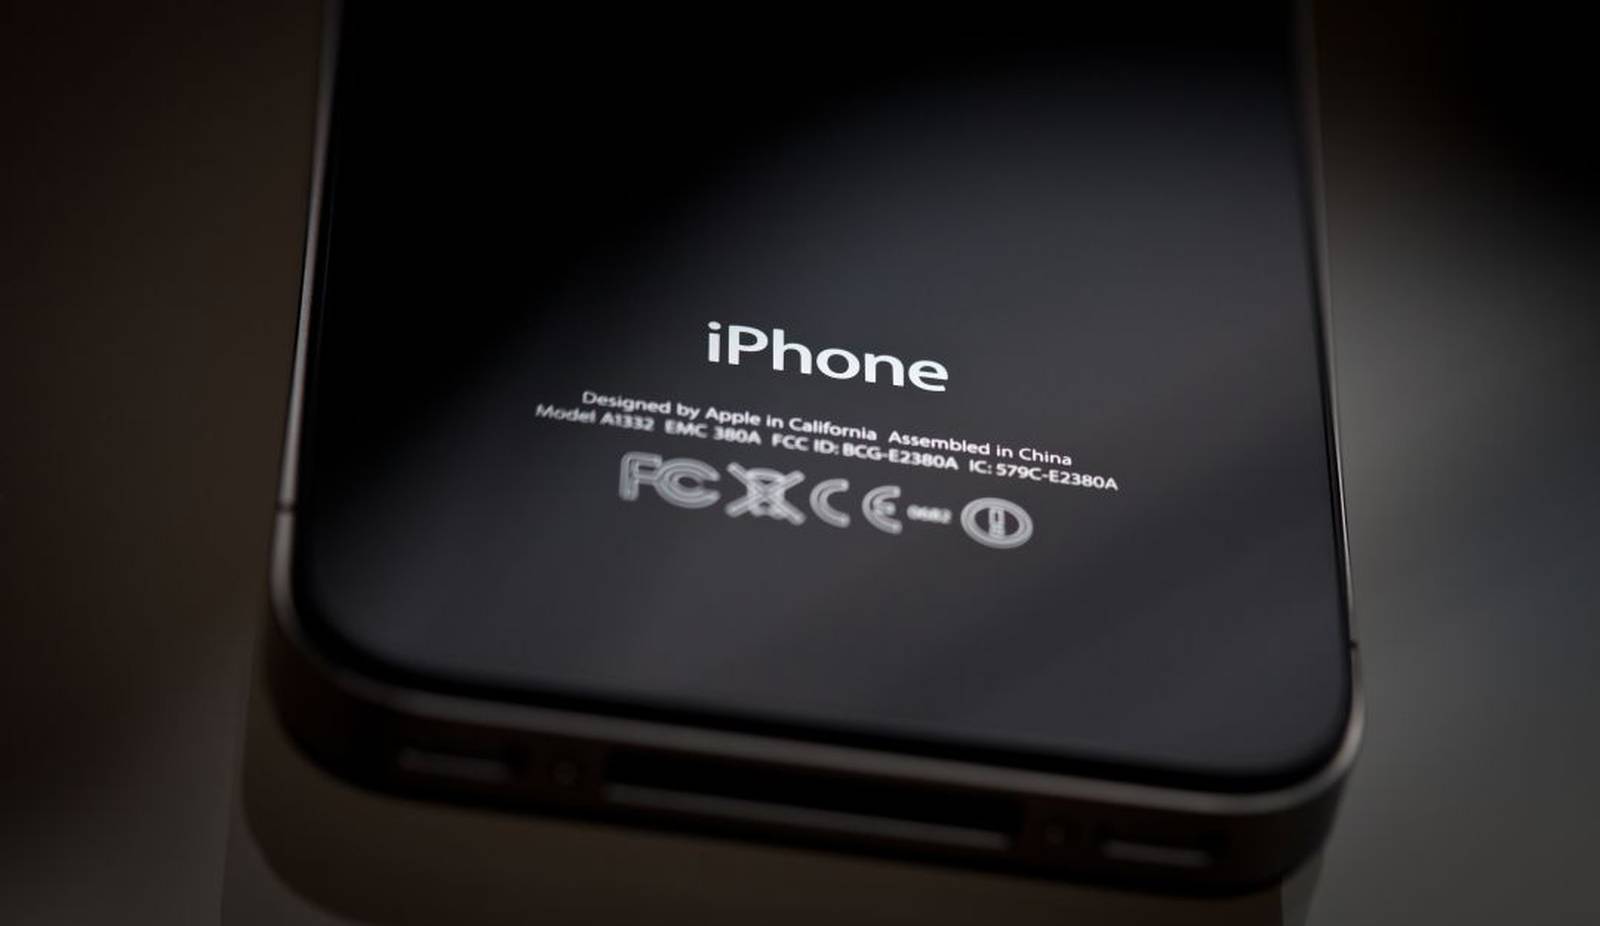 Modelos de iPhones que ya no se actualizan Apple pagará millonaria multa  por hacer lentos los modelos antiguos : Apple pagará millonaria multa por  hacer lentos los modelos antiguos